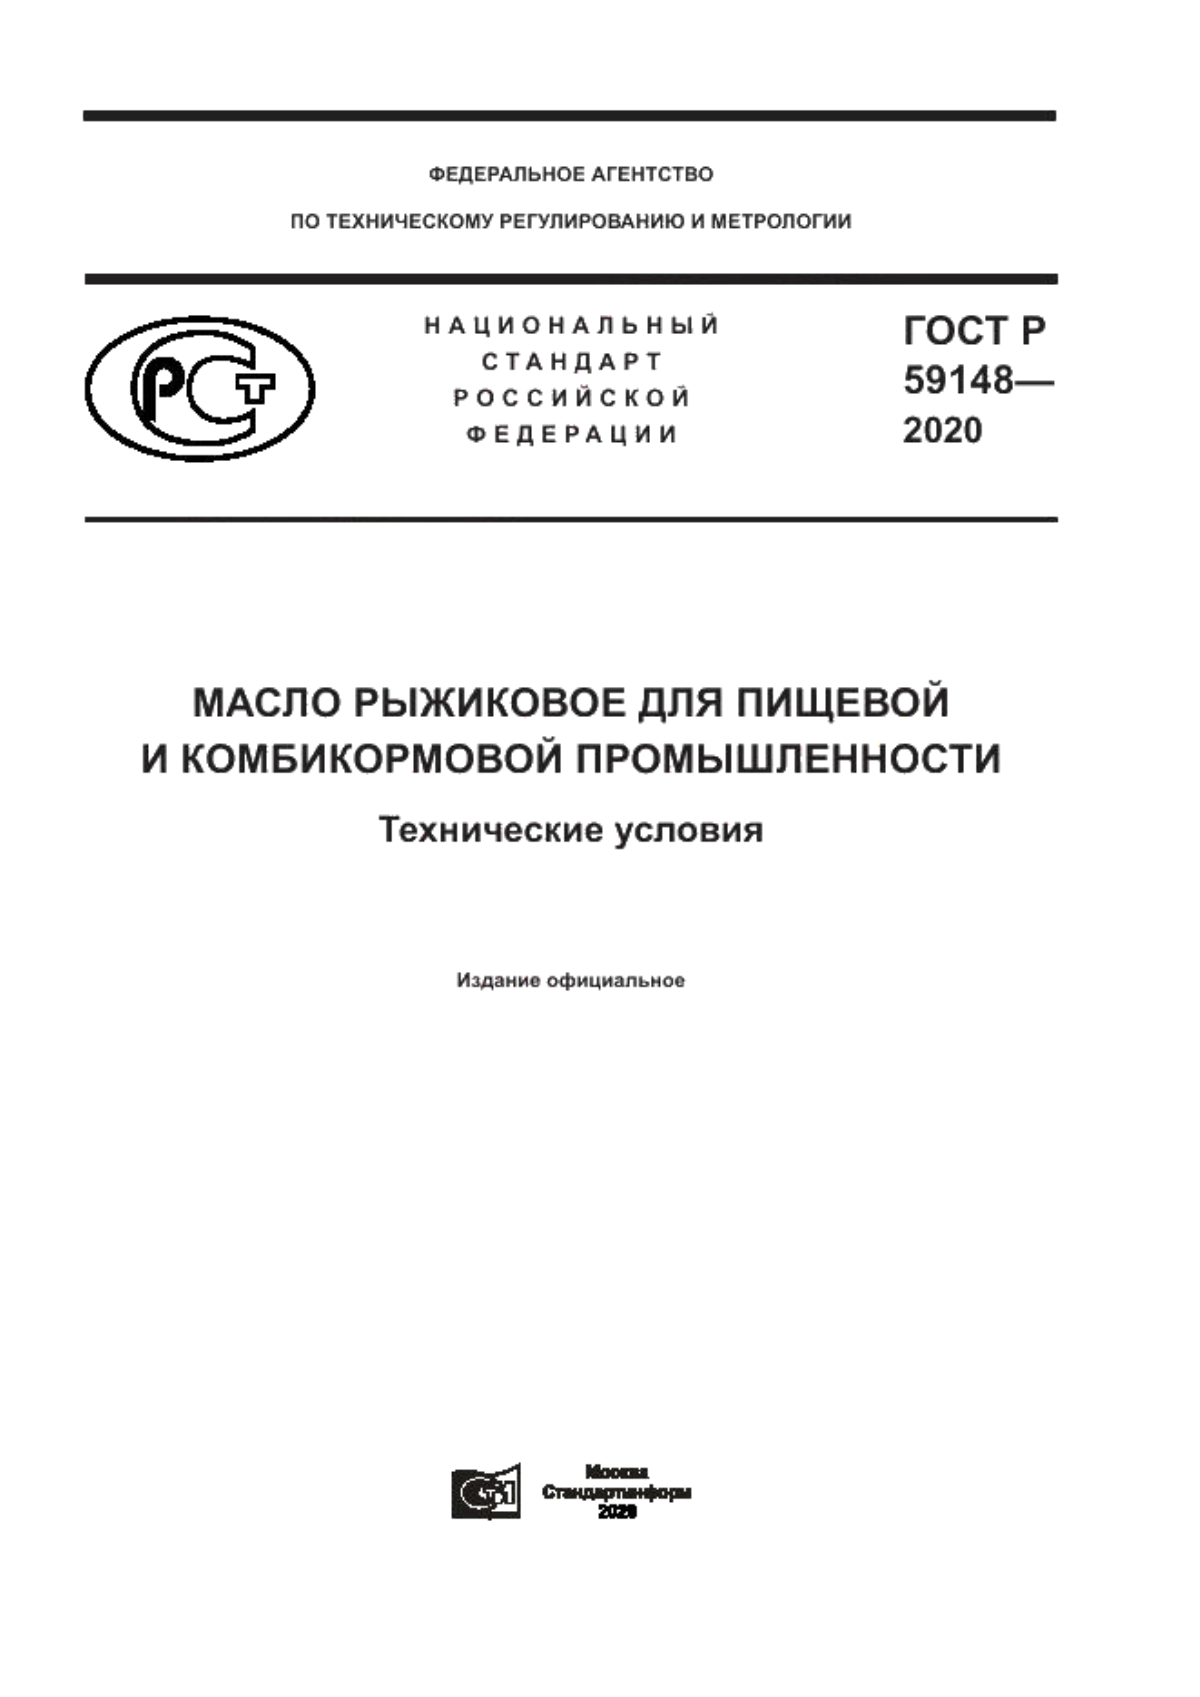 ГОСТ Р 59148-2020 Масло рыжиковое для пищевой и комбикормовой промышленности. Технические условия